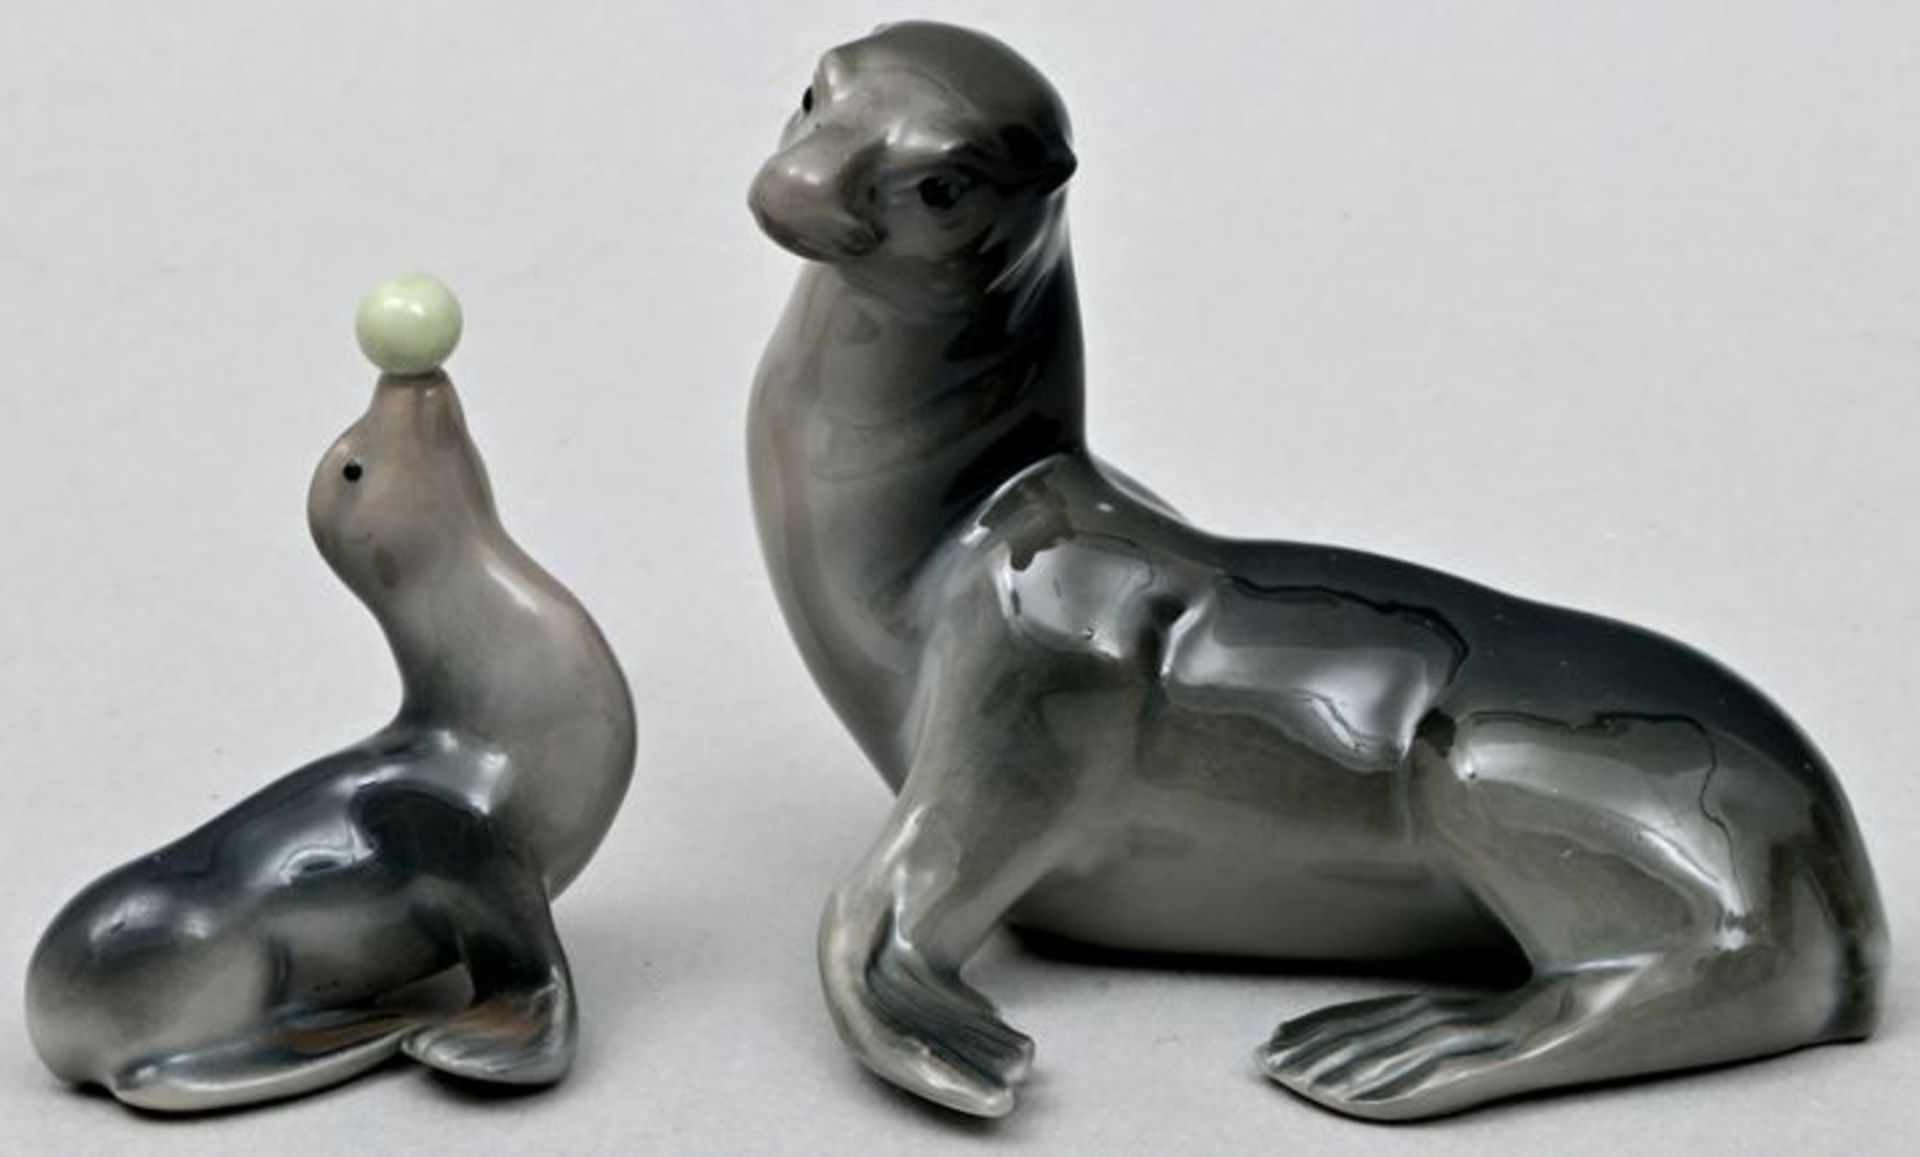 Seelöwen-Pärchen / Sea lions, porcelain figures